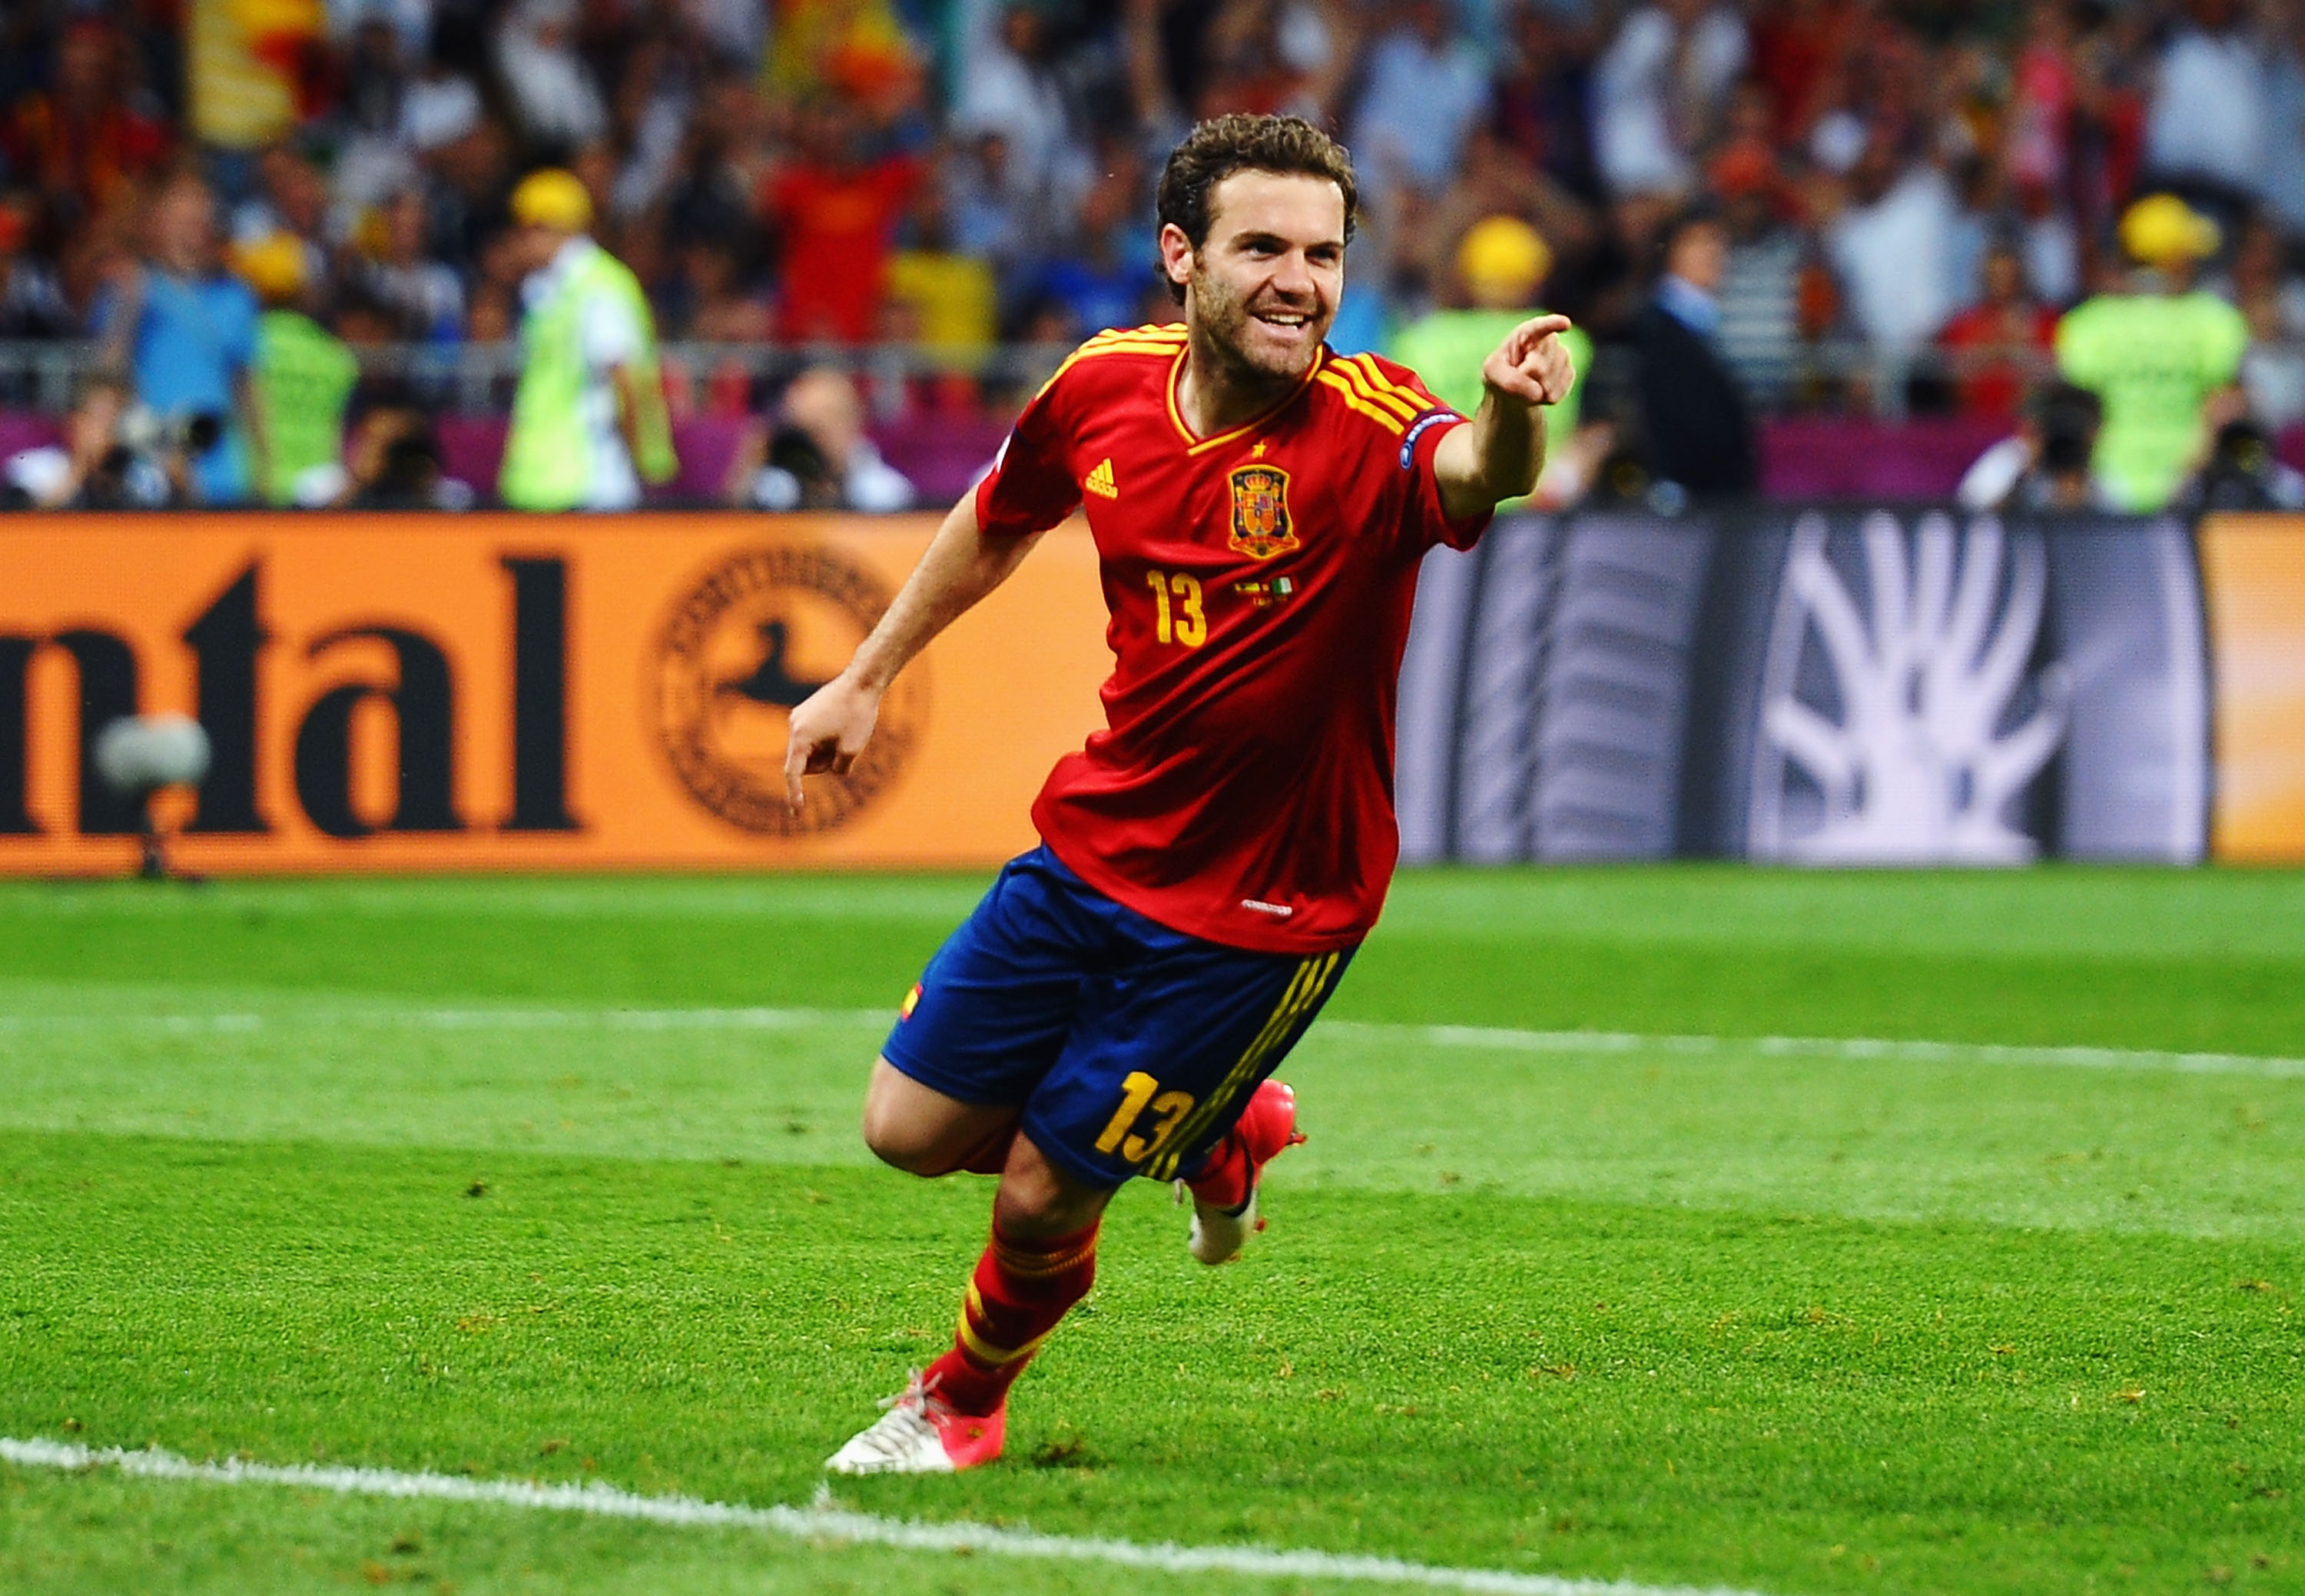 6. Juan Mata, Spanien/Chelsea. Har vunnit Champions League och EM den gångna säsongen. Nu ska han ta en tredje titel.